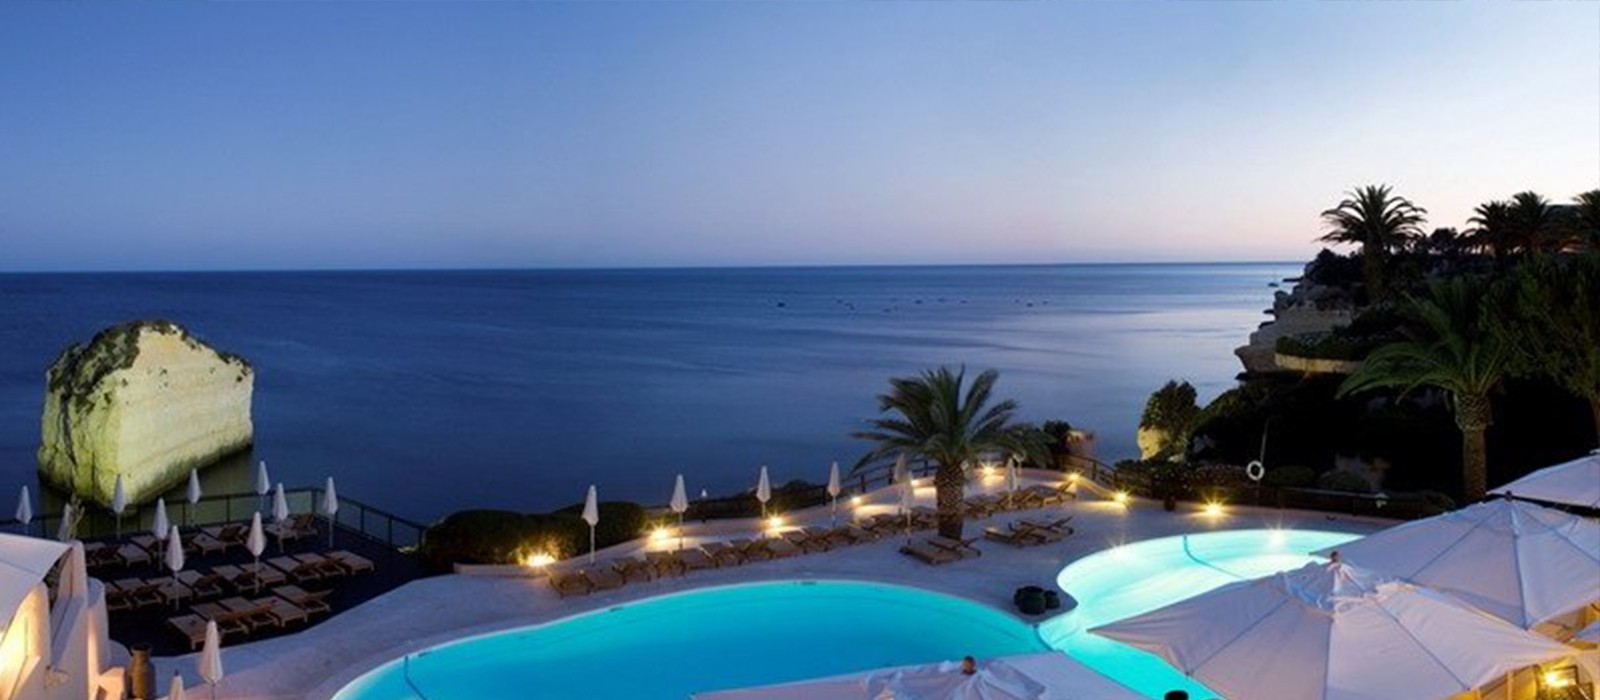 Header - Vialara Thalassa Resort - Luxuxry Portugal Holidays